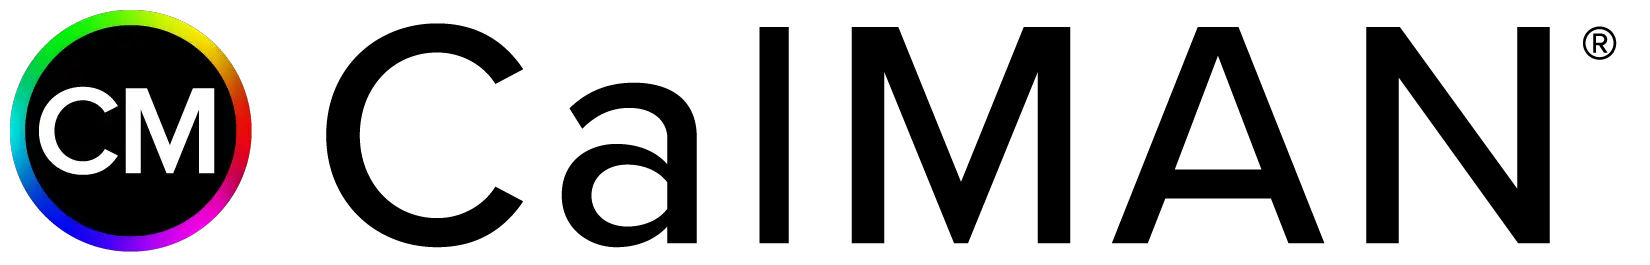 CalMAN CM logotype